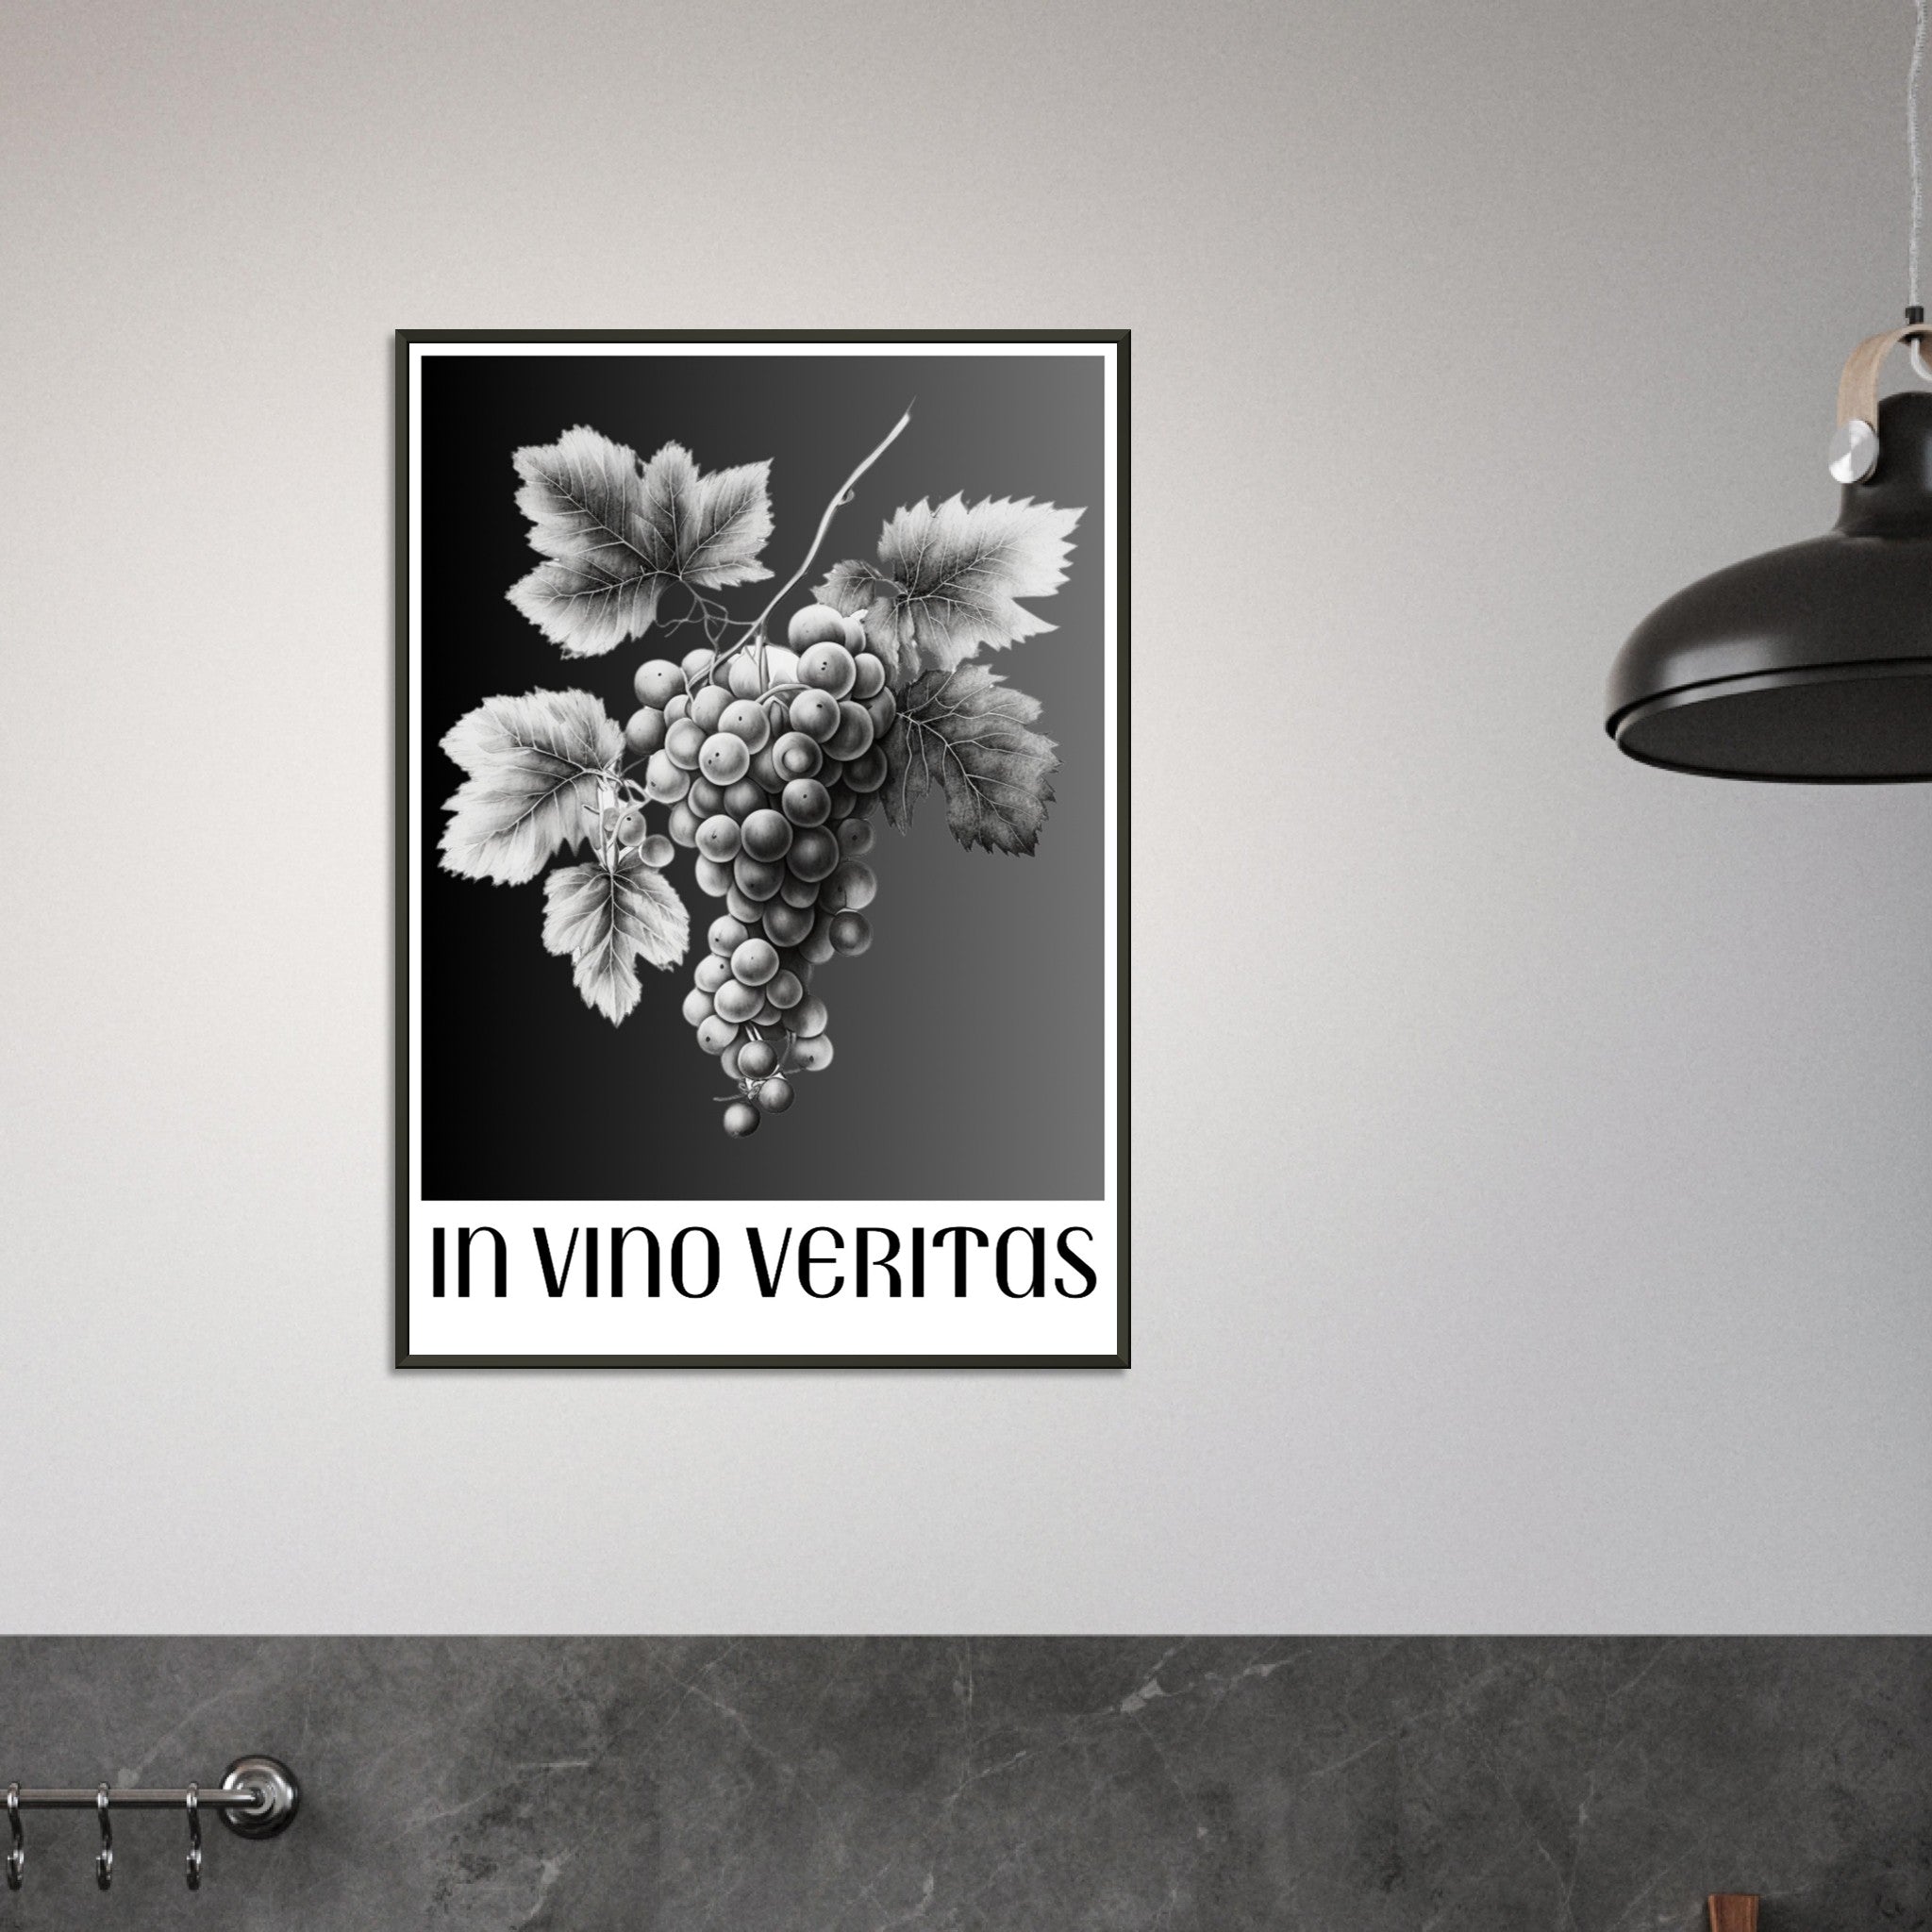 In Vino Veritas: Timeless Wine Wall Art for the Modern Home